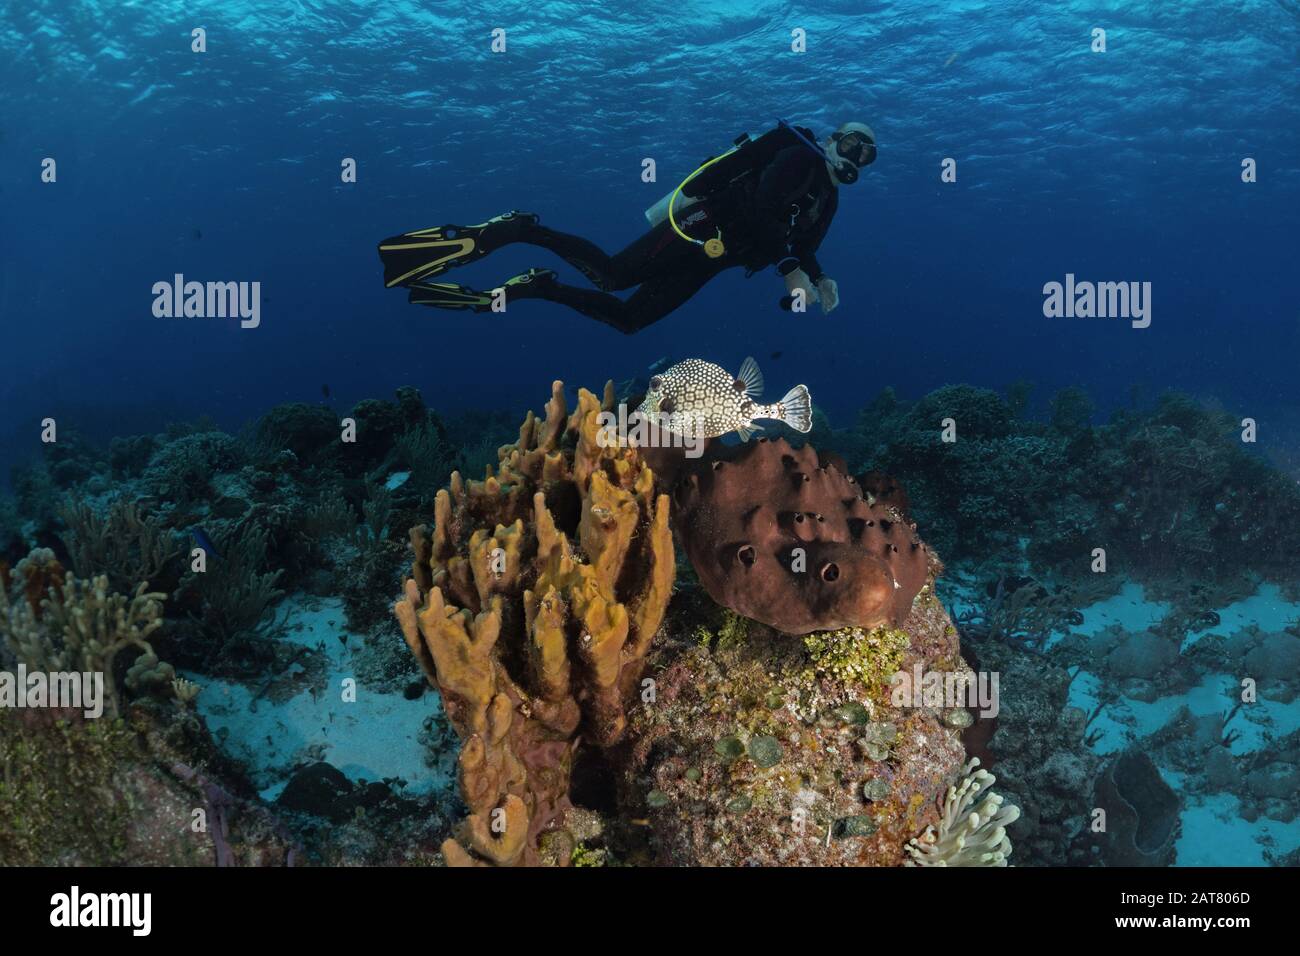 reef scene,sponge, sea fan, Stock Photo